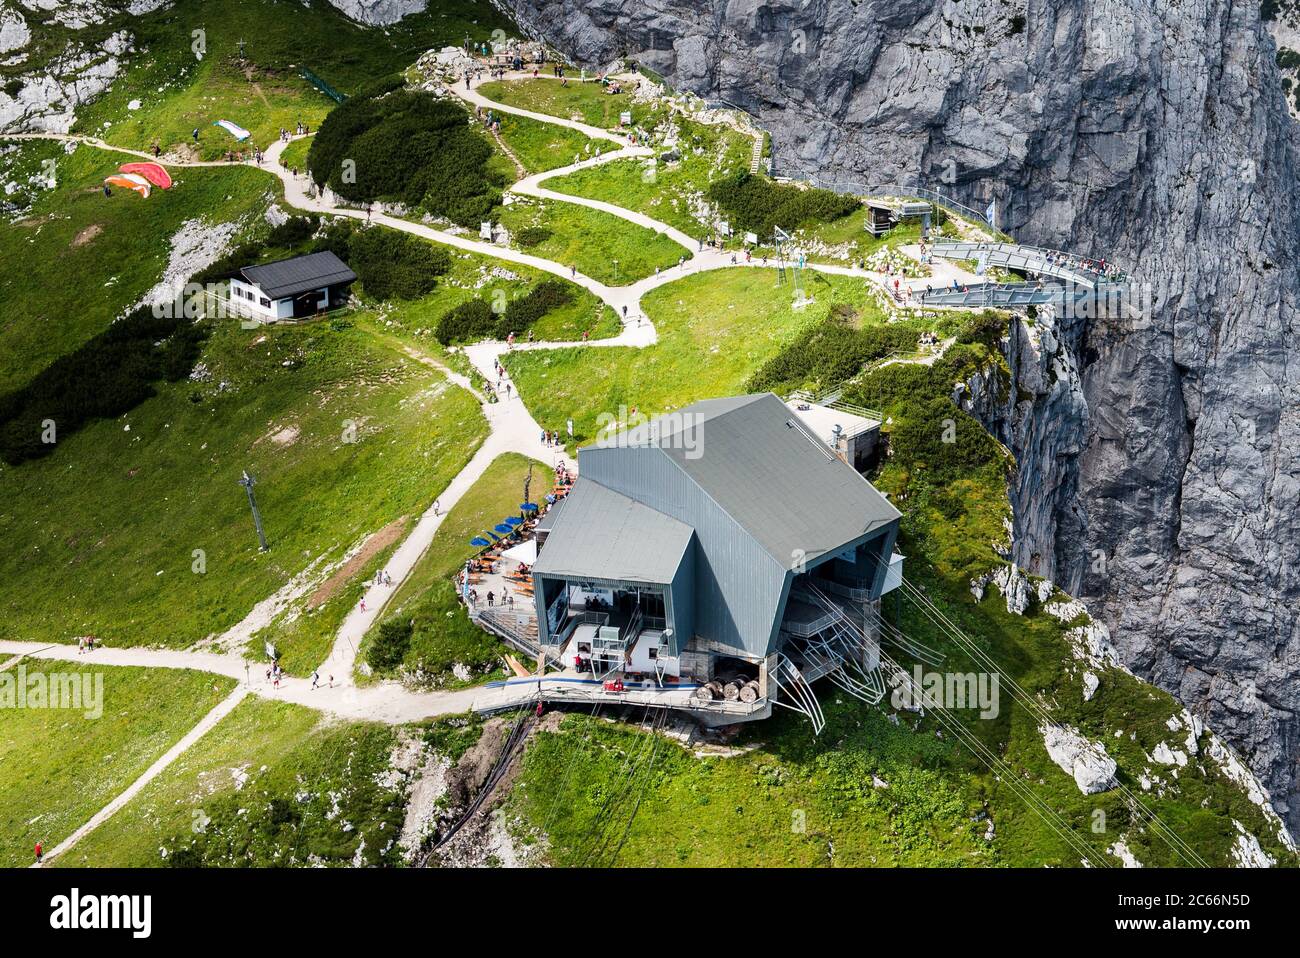 Pic Alpspitze avec pic Osterfelderkopf, station de montagne Alpspitzbahn et plate-forme de belvédère AlpspiX, site de lancement du parapente, photo aérienne, Garmisch-Partenkirchen, Bavière, Allemagne Banque D'Images